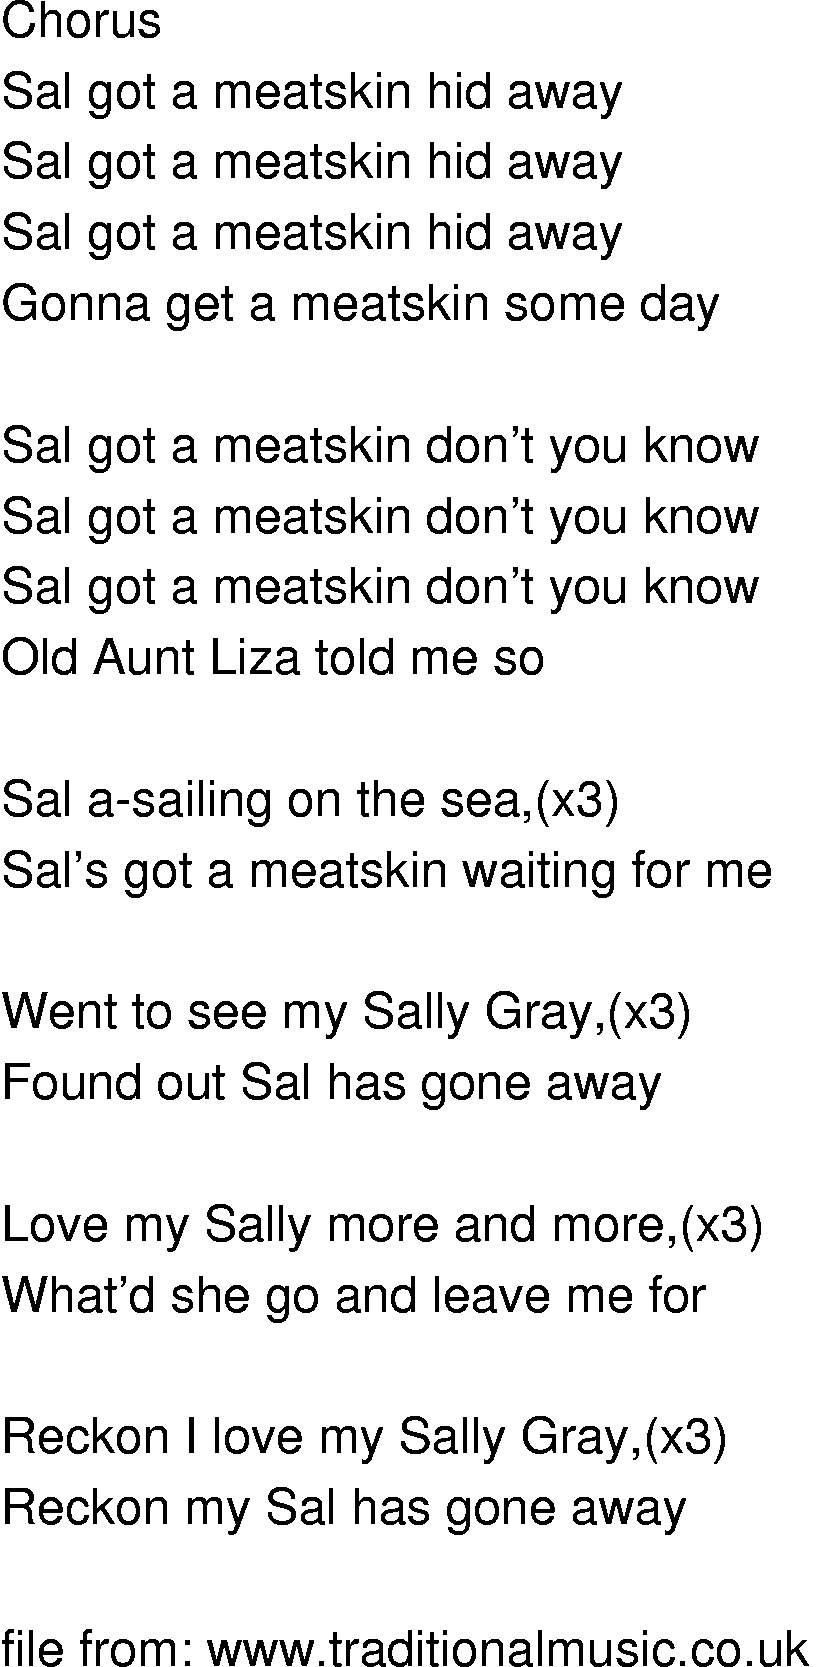 Old-Time (oldtimey) Song Lyrics - sal got a meatskin